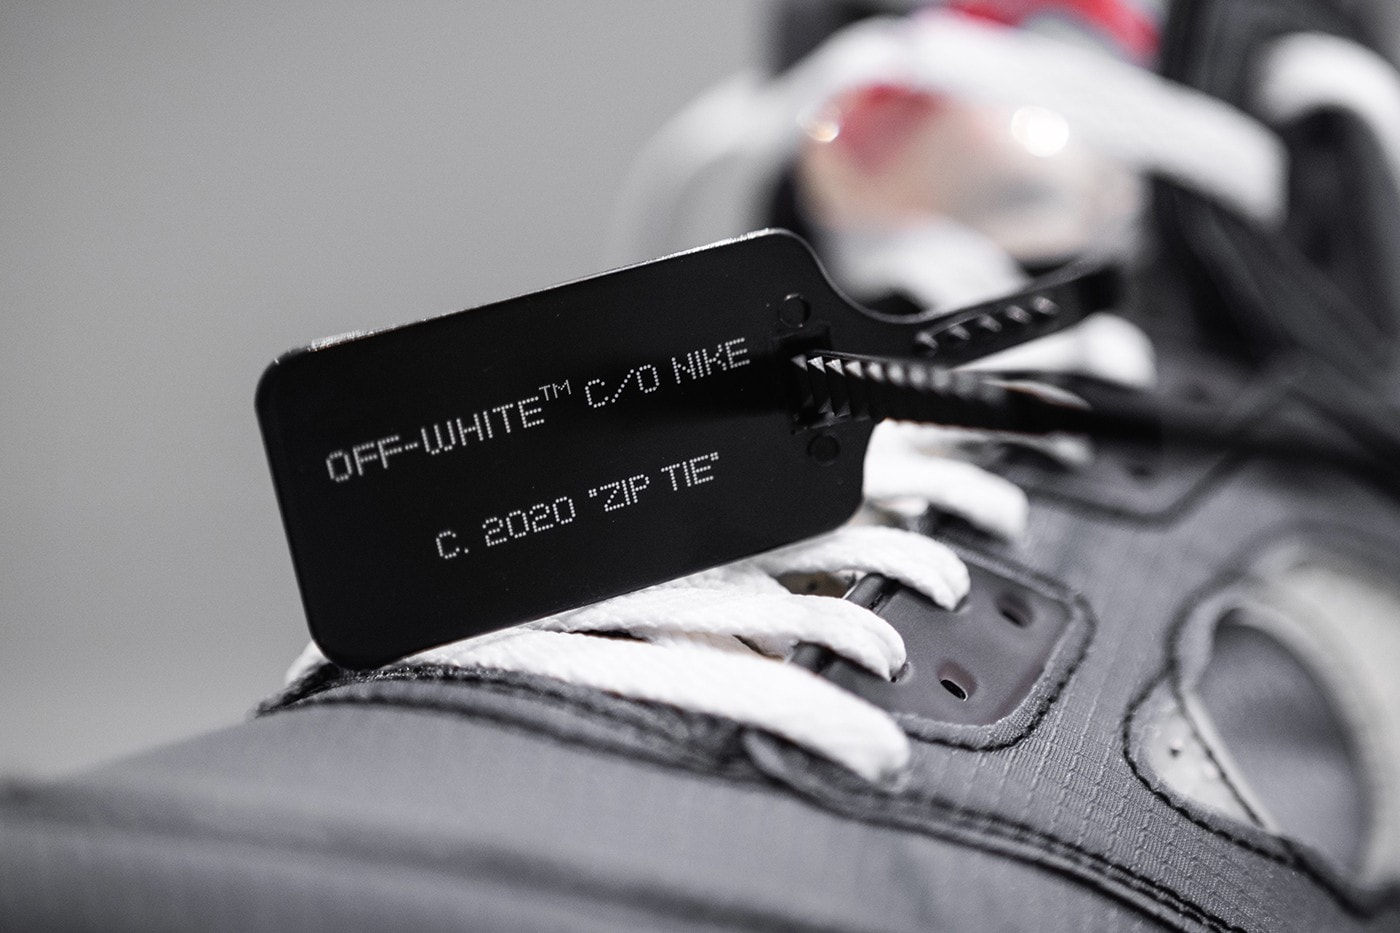 HYPEBEAST 率先近賞 Off-White™ x Air Jordan 5 全新聯乘鞋款